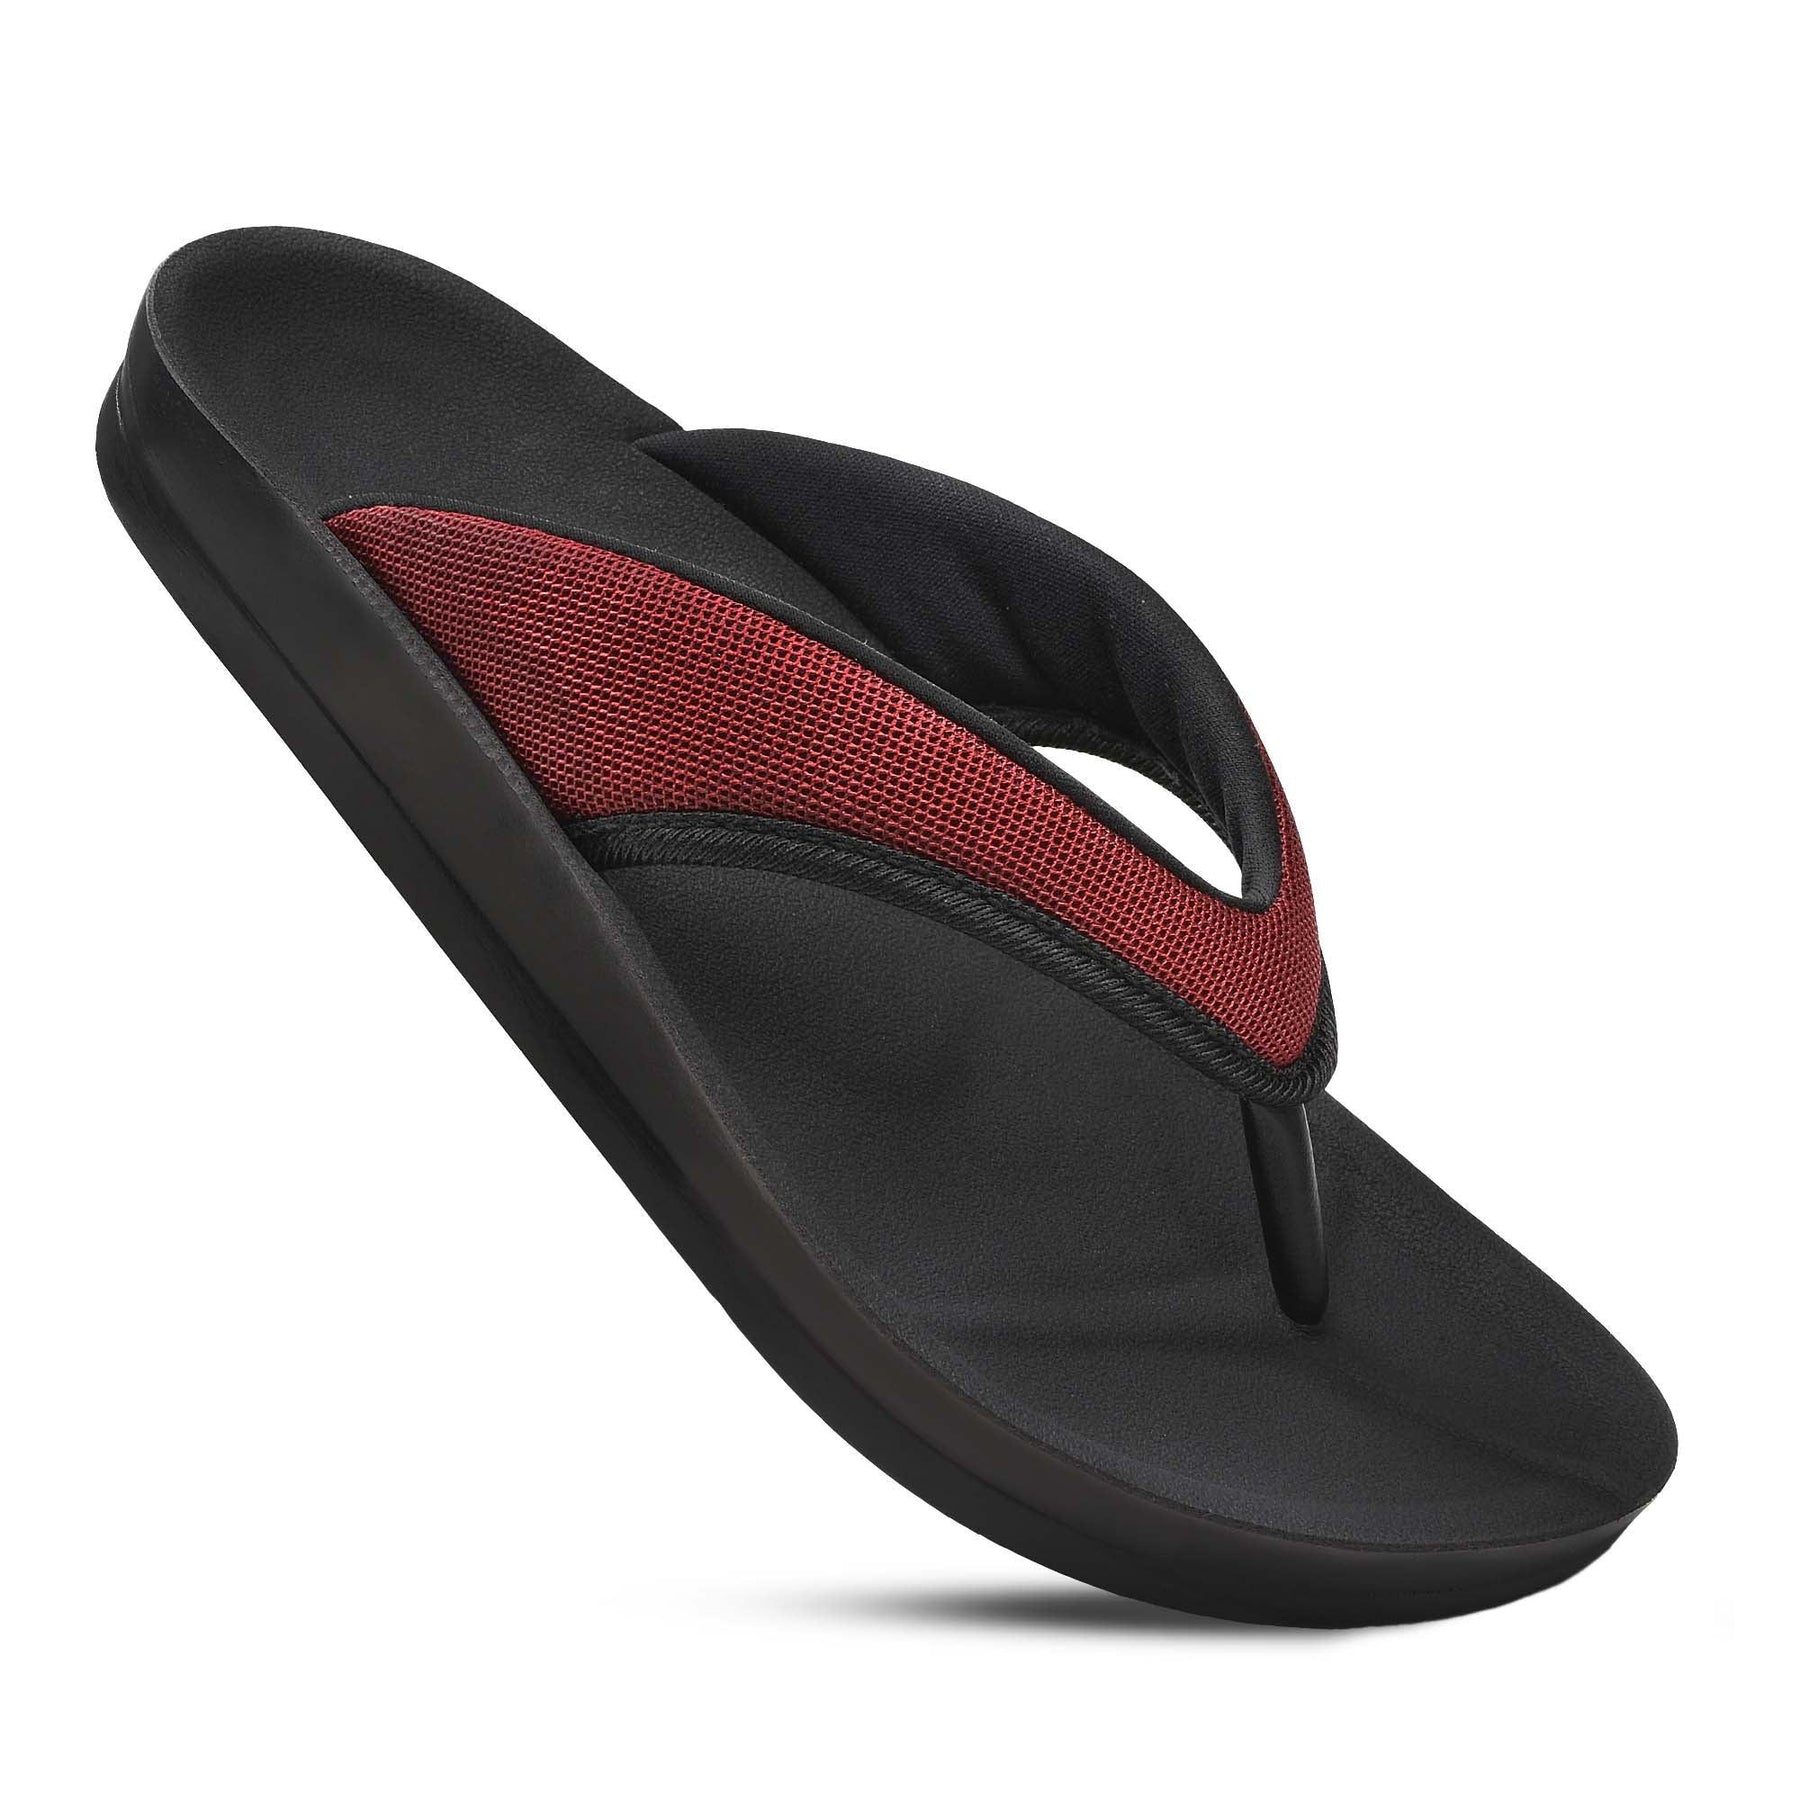 Aerothotic - Enhalus orthotic thong sandals for women – Aerothotic ...